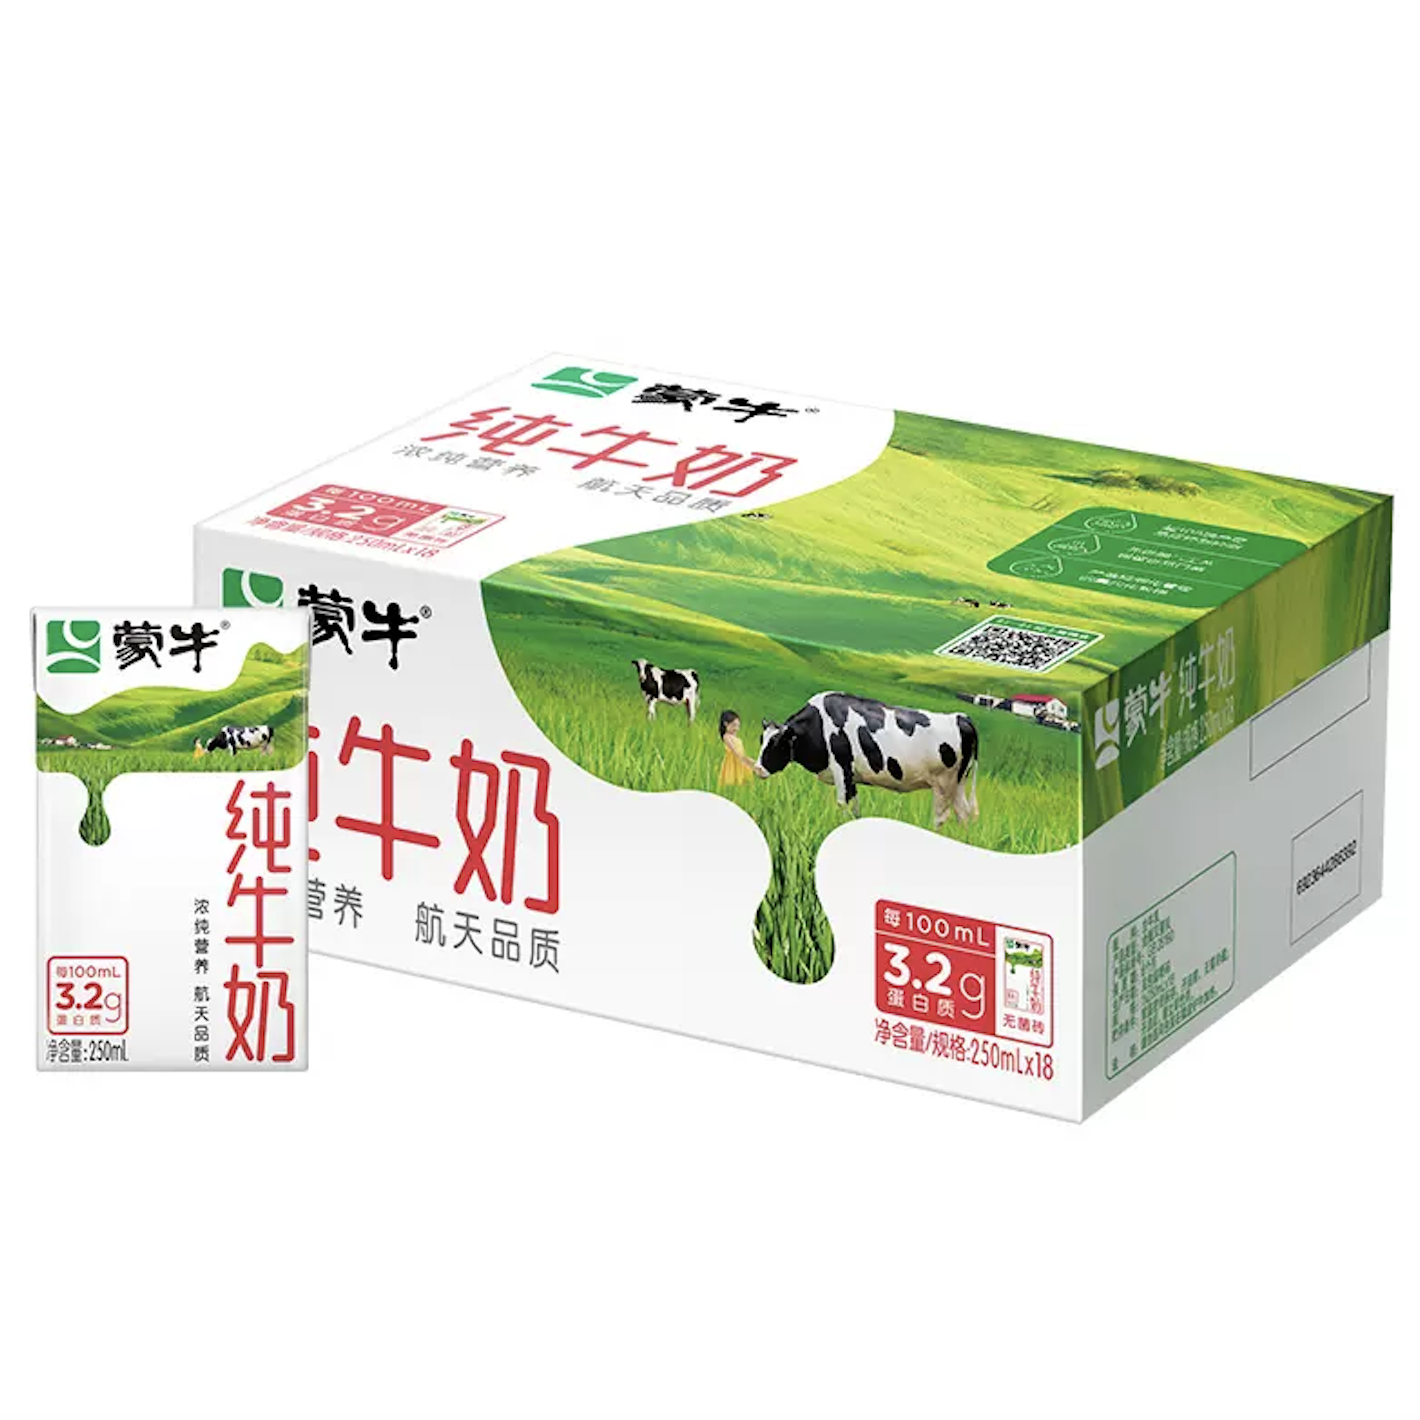 【百亿补贴】 蒙牛纯牛奶全脂乳早餐250ml×18包整箱 33.9元